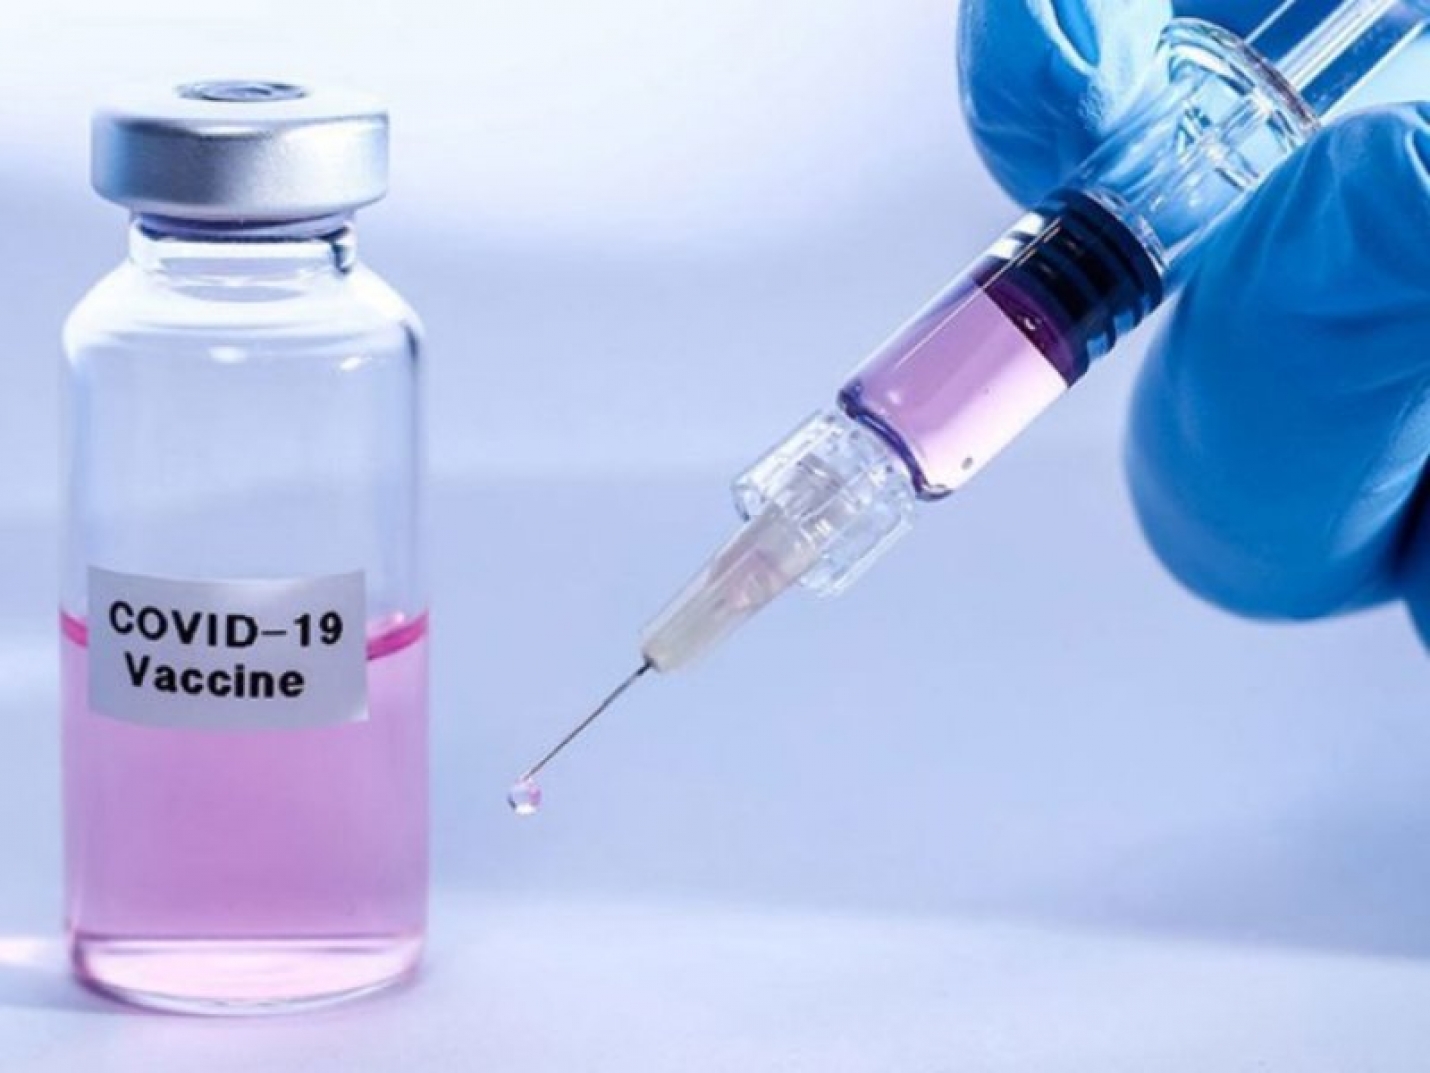 Вакцина от коронавируса будет доставлена в столичные клиники до 3 сентября